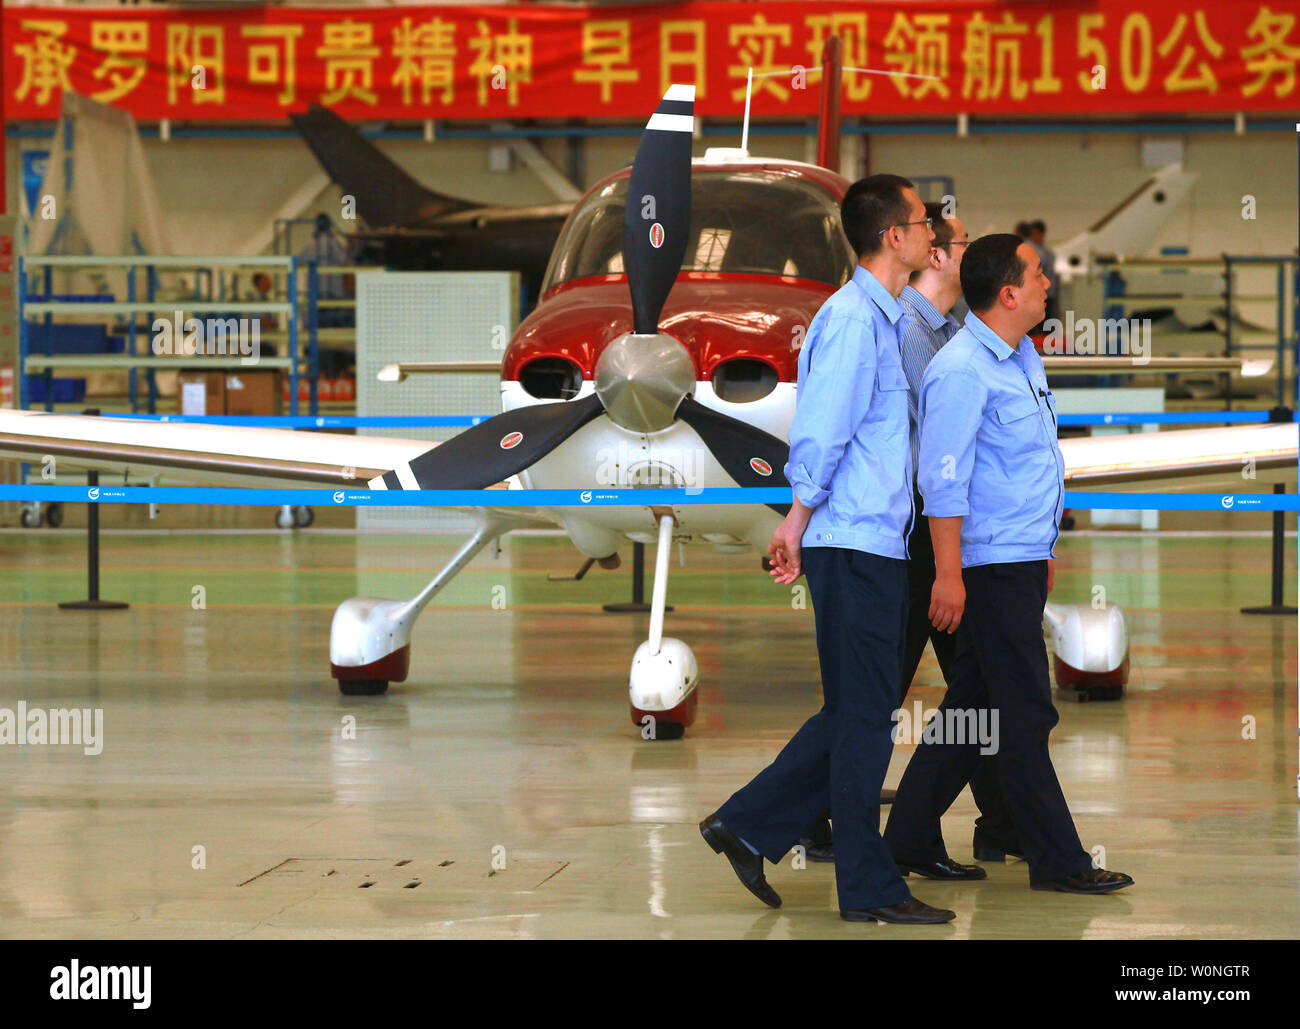 Chinesische konstruiert und gebaut von Leichtflugzeugen werden angezeigt und in einem Hangar modelliert, in der Zentrale der China Aviation Industry Reiseflugzeuge (CAIGA), einem staatlichen Unternehmen, in Zhuhai, einer größeren Stadt am Pearl River in der südchinesischen Provinz Guangdong liegt am 27. Oktober 2013. Die chinesische Regierung hält 100 Cirrus, einem US-amerikanischen Hersteller von Flugzeugen, die Fertigung ist etwas von CAiGA die Flugzeuge auf US-Boden. Mit Hilfe ausländischer Technologie und Erfahrung, China hofft, seine eigene Flotte sowohl für private als auch kommerzielle Flugzeuge für nationale und internationale zu produzieren Stockfoto